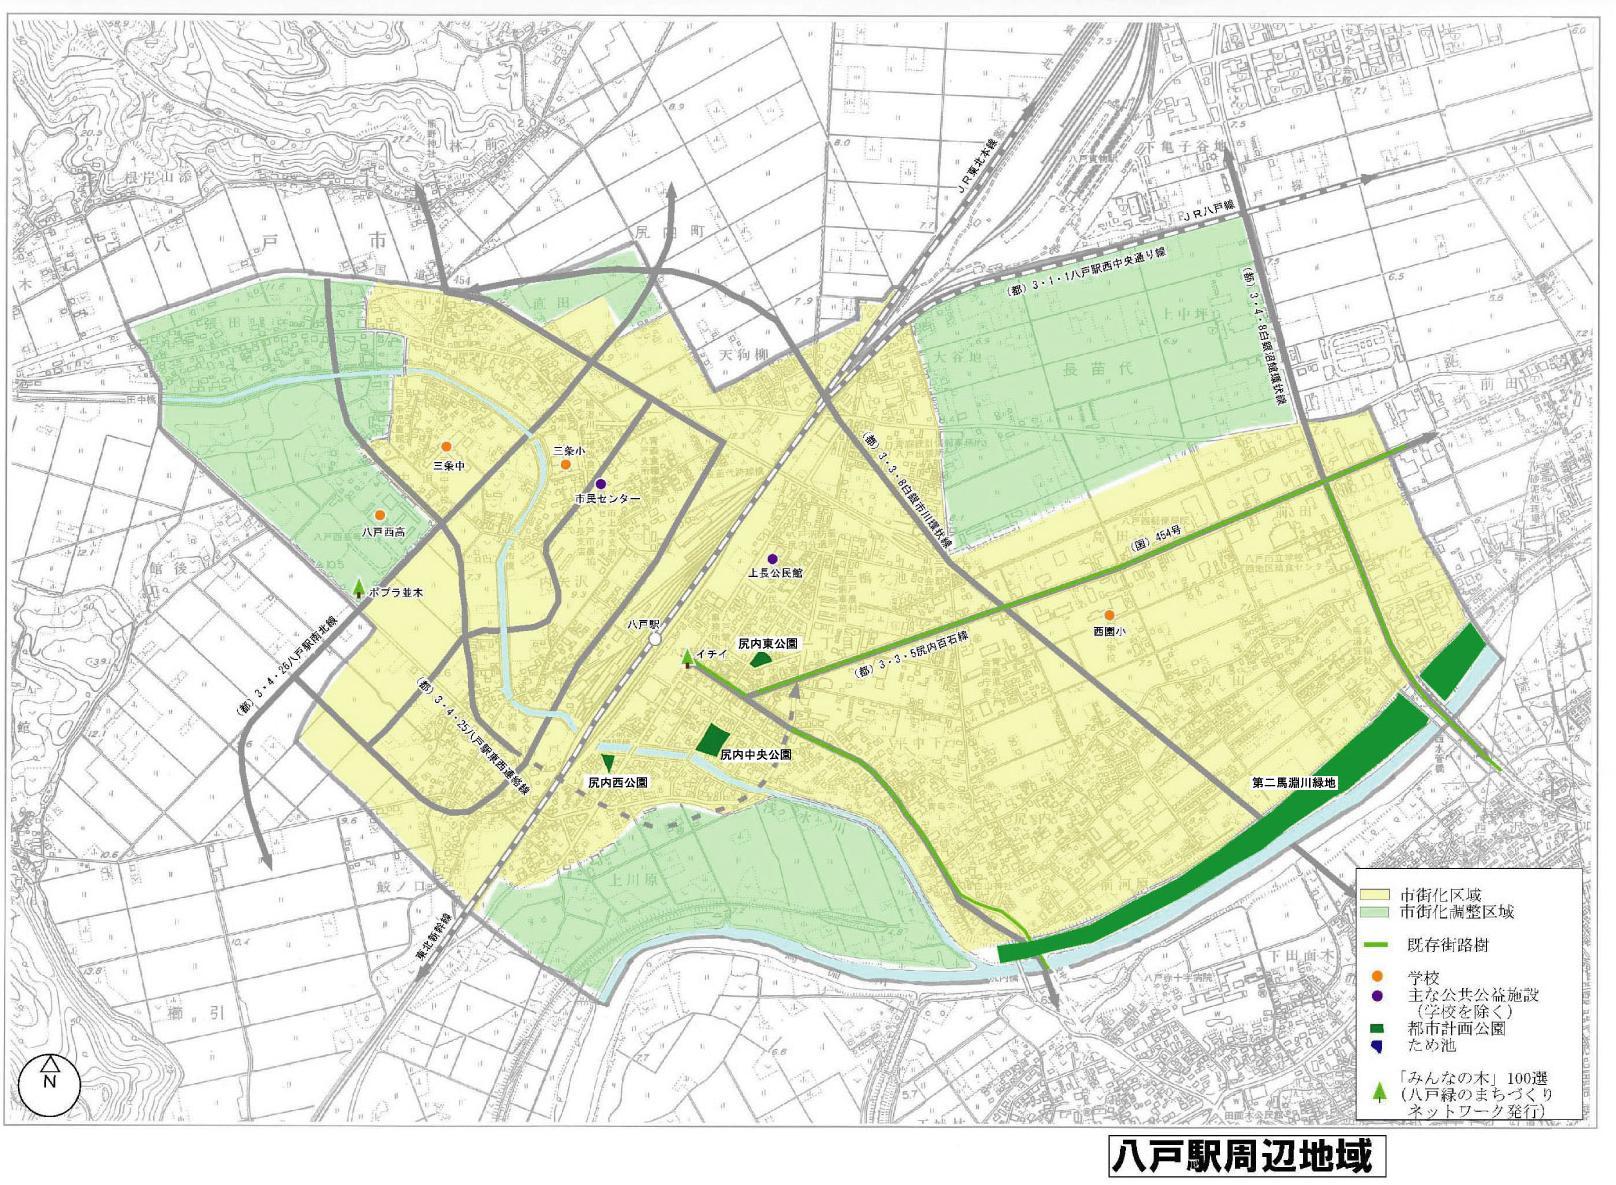 八戸駅周辺地域の公園配置図と公園一覧の地図画像